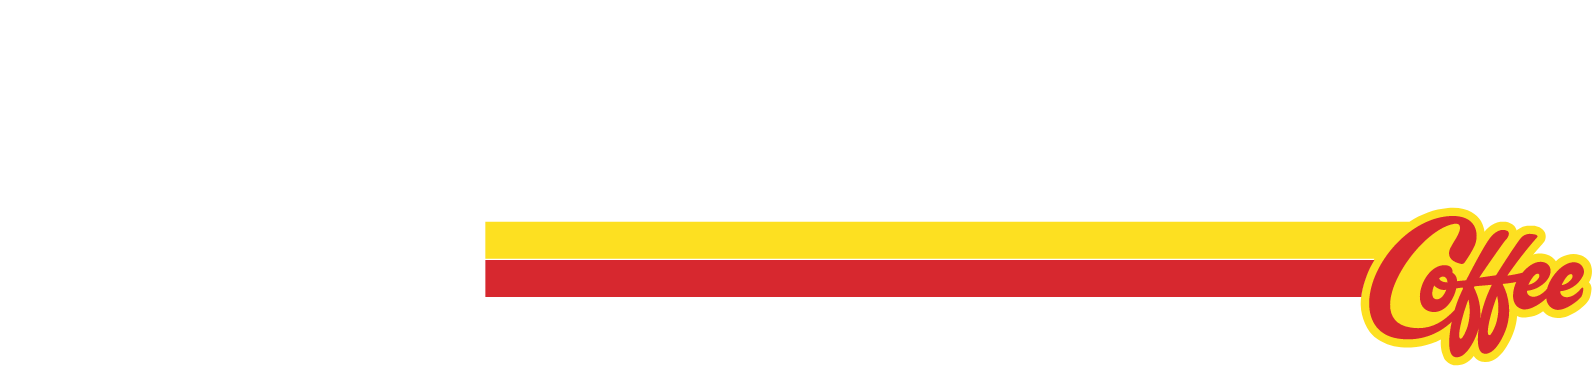 Dutch Bros logo large for dark backgrounds (transparent PNG)